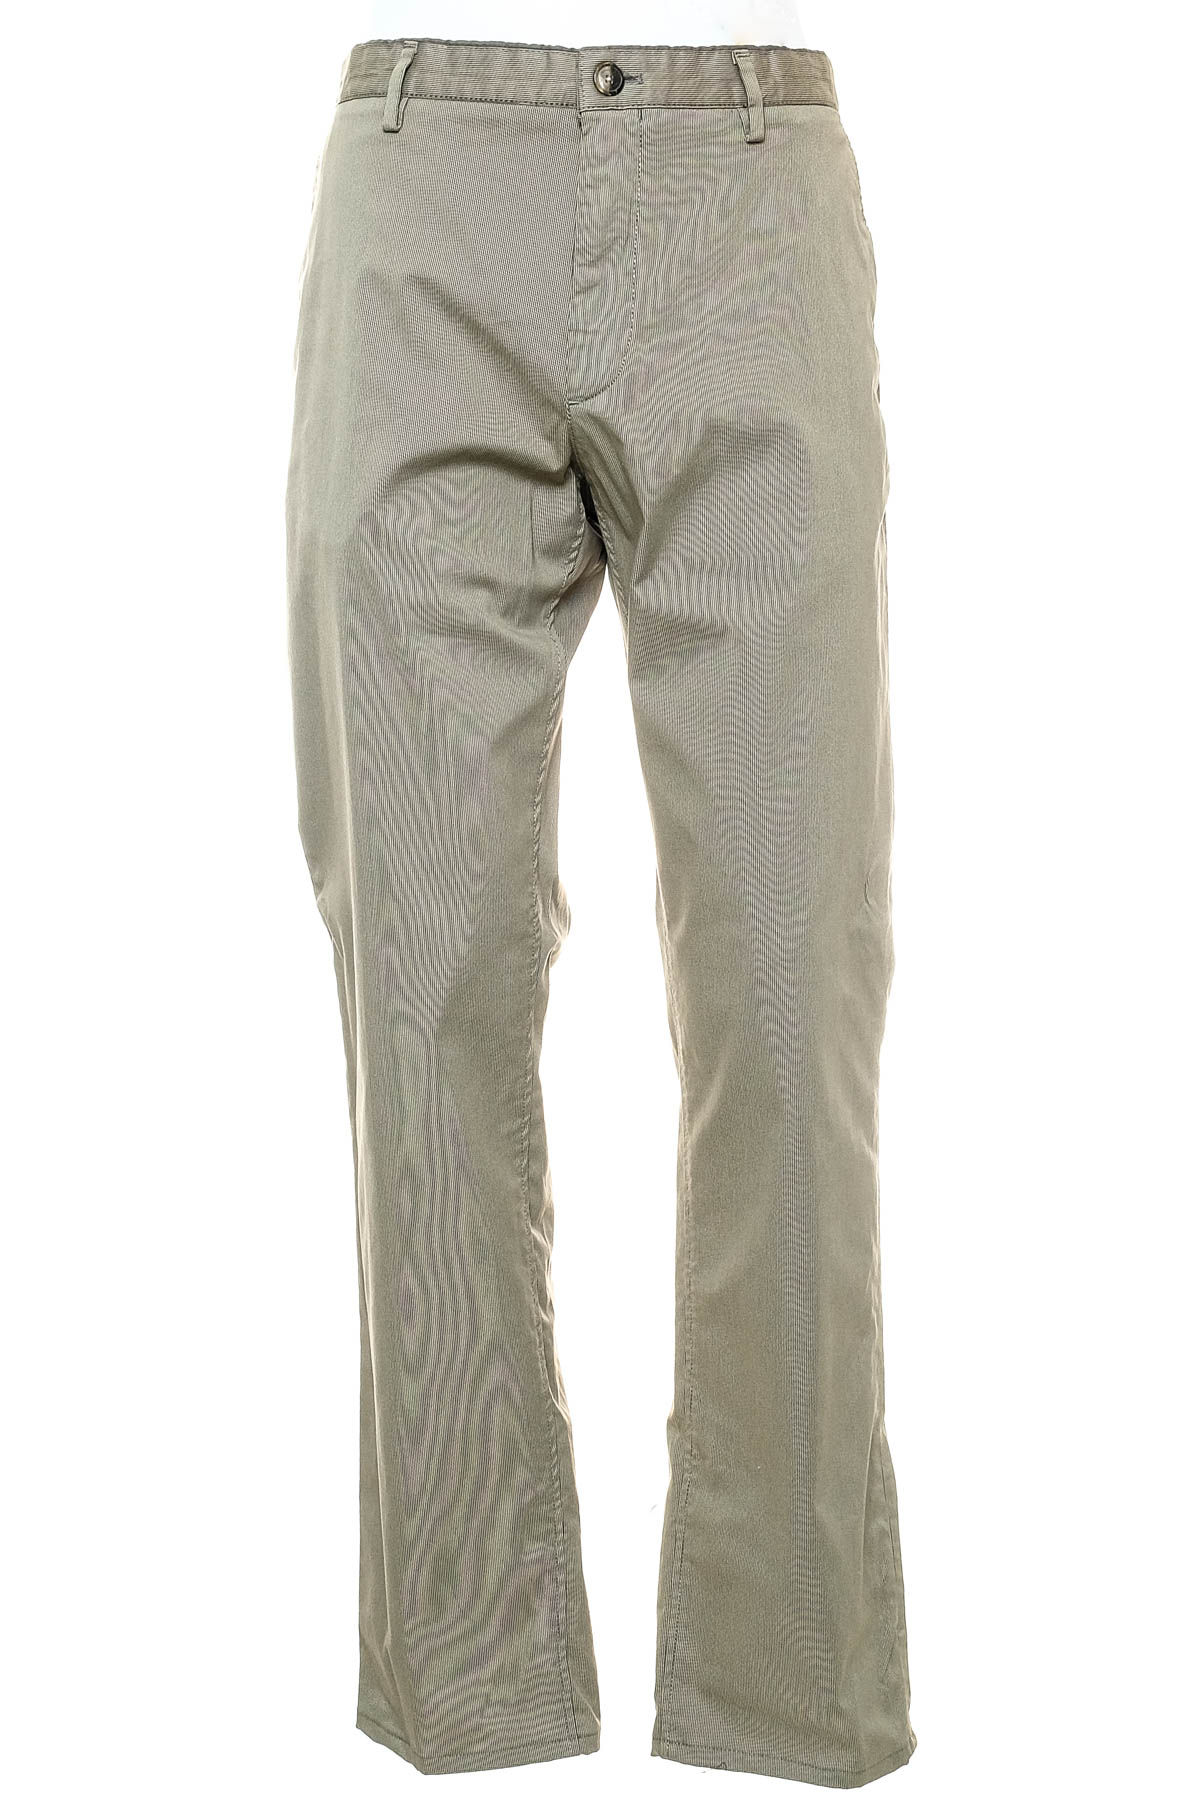 Ανδρικά παντελόνια - Massimo Dutti - 0